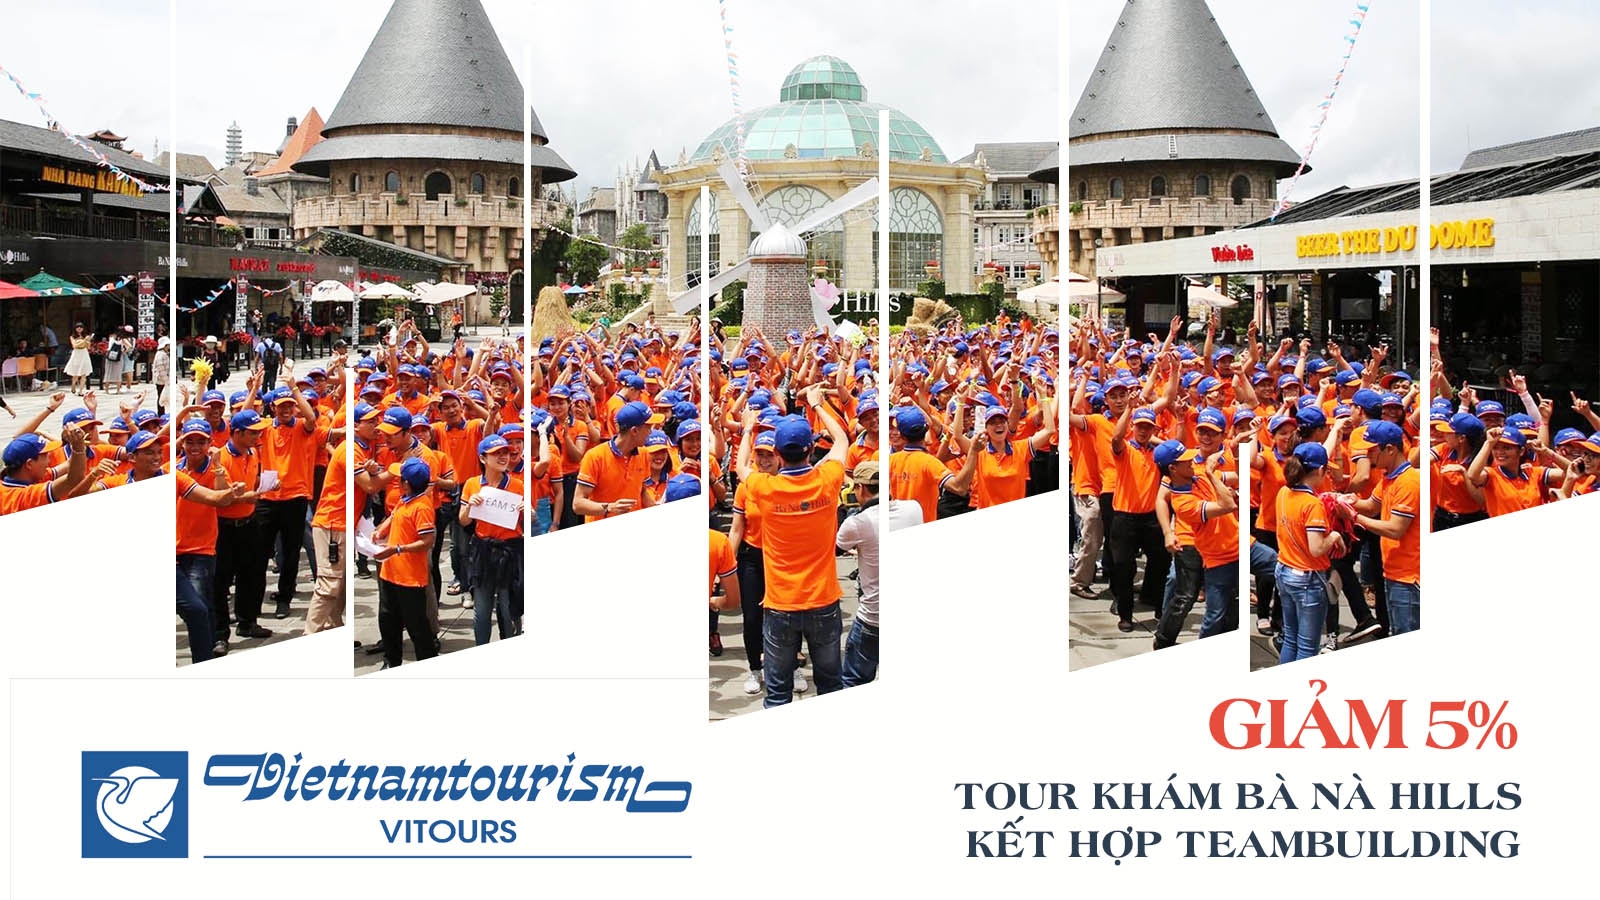 Vitours | Giảm 5% Tour tham quan Bà Nà kết hợp team building 2